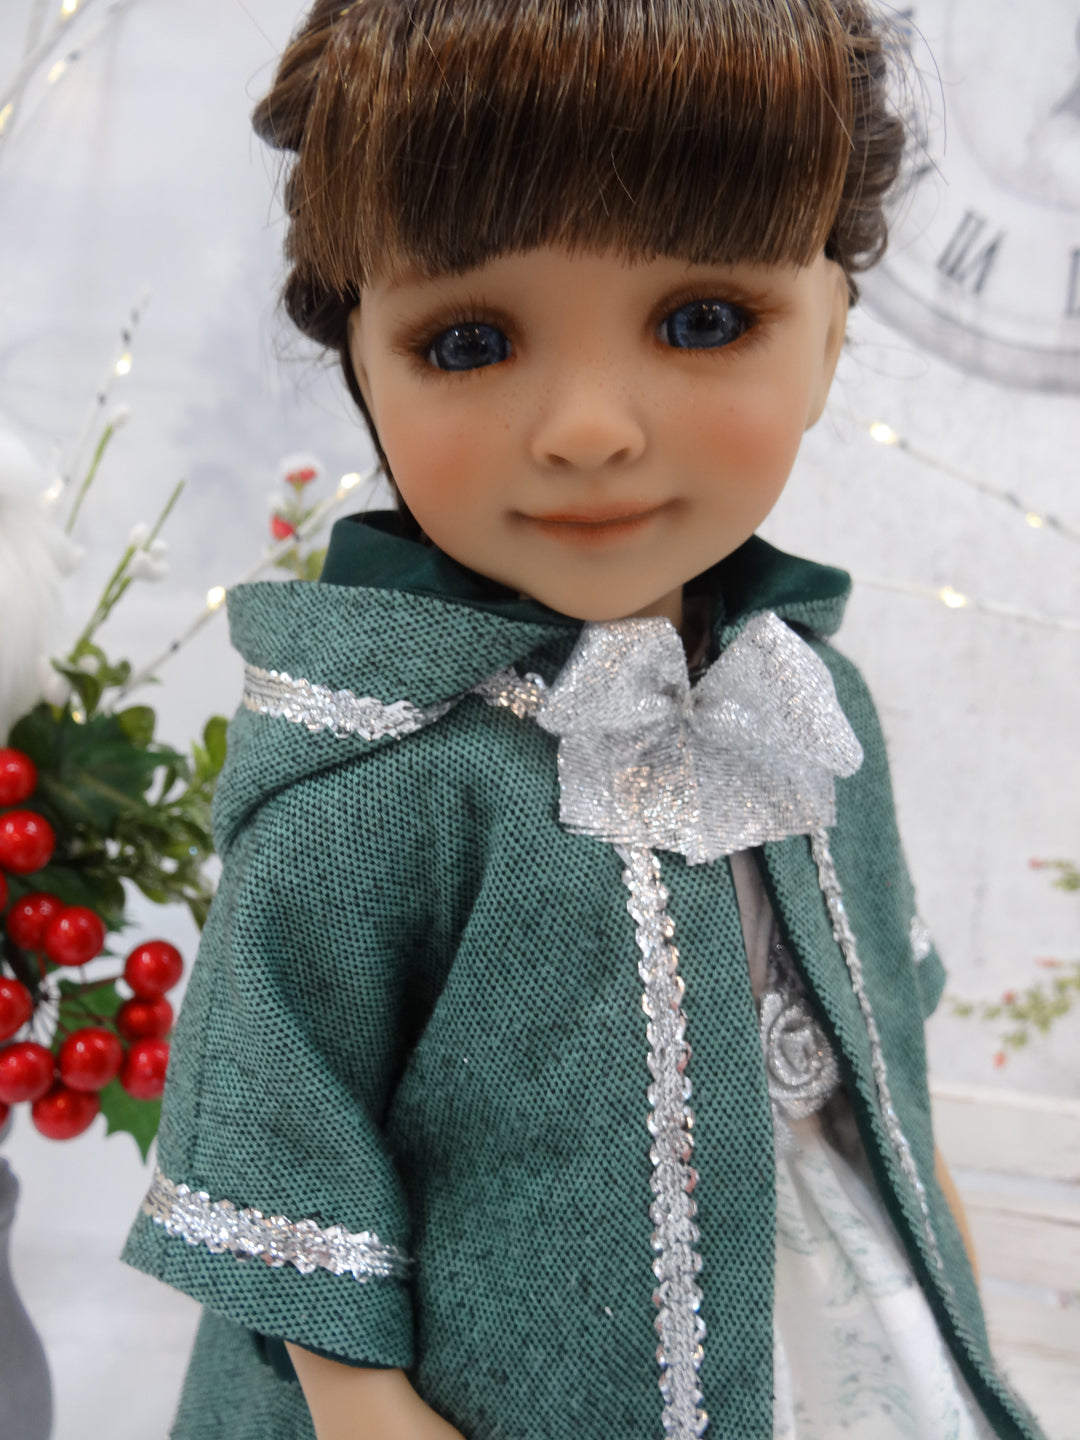 Clara - custom Christmas themed Ruby Red Fashion Friend doll & wardrobe